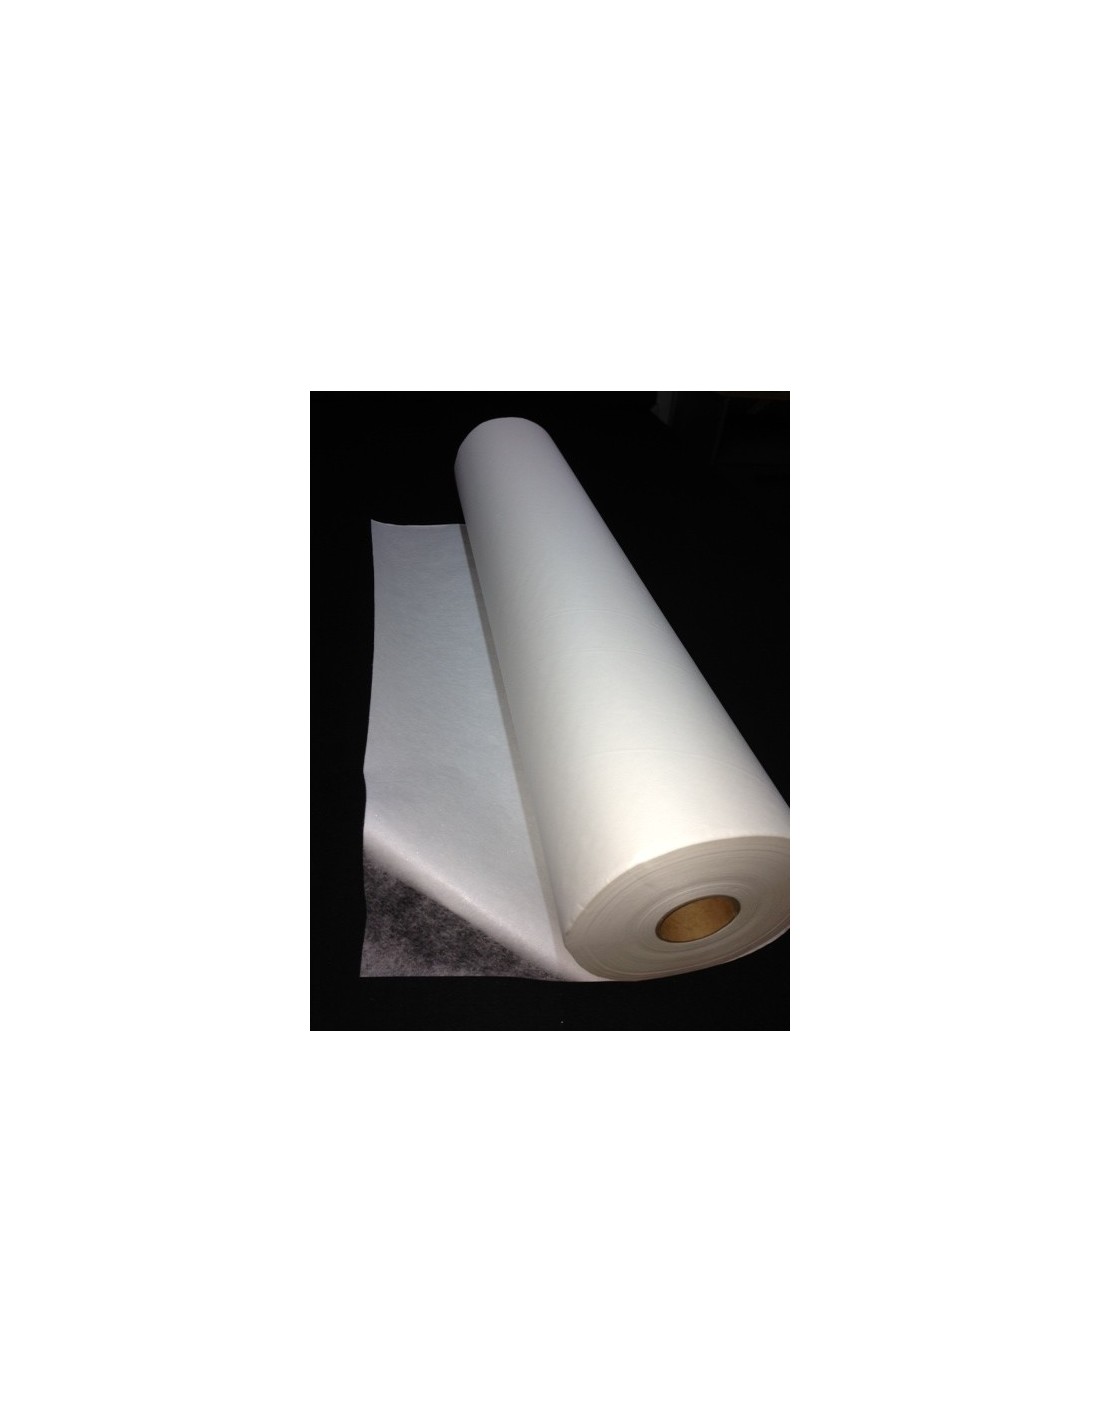 Rouleau de papier adhésif thermocollant double-face - 1 x 1 m